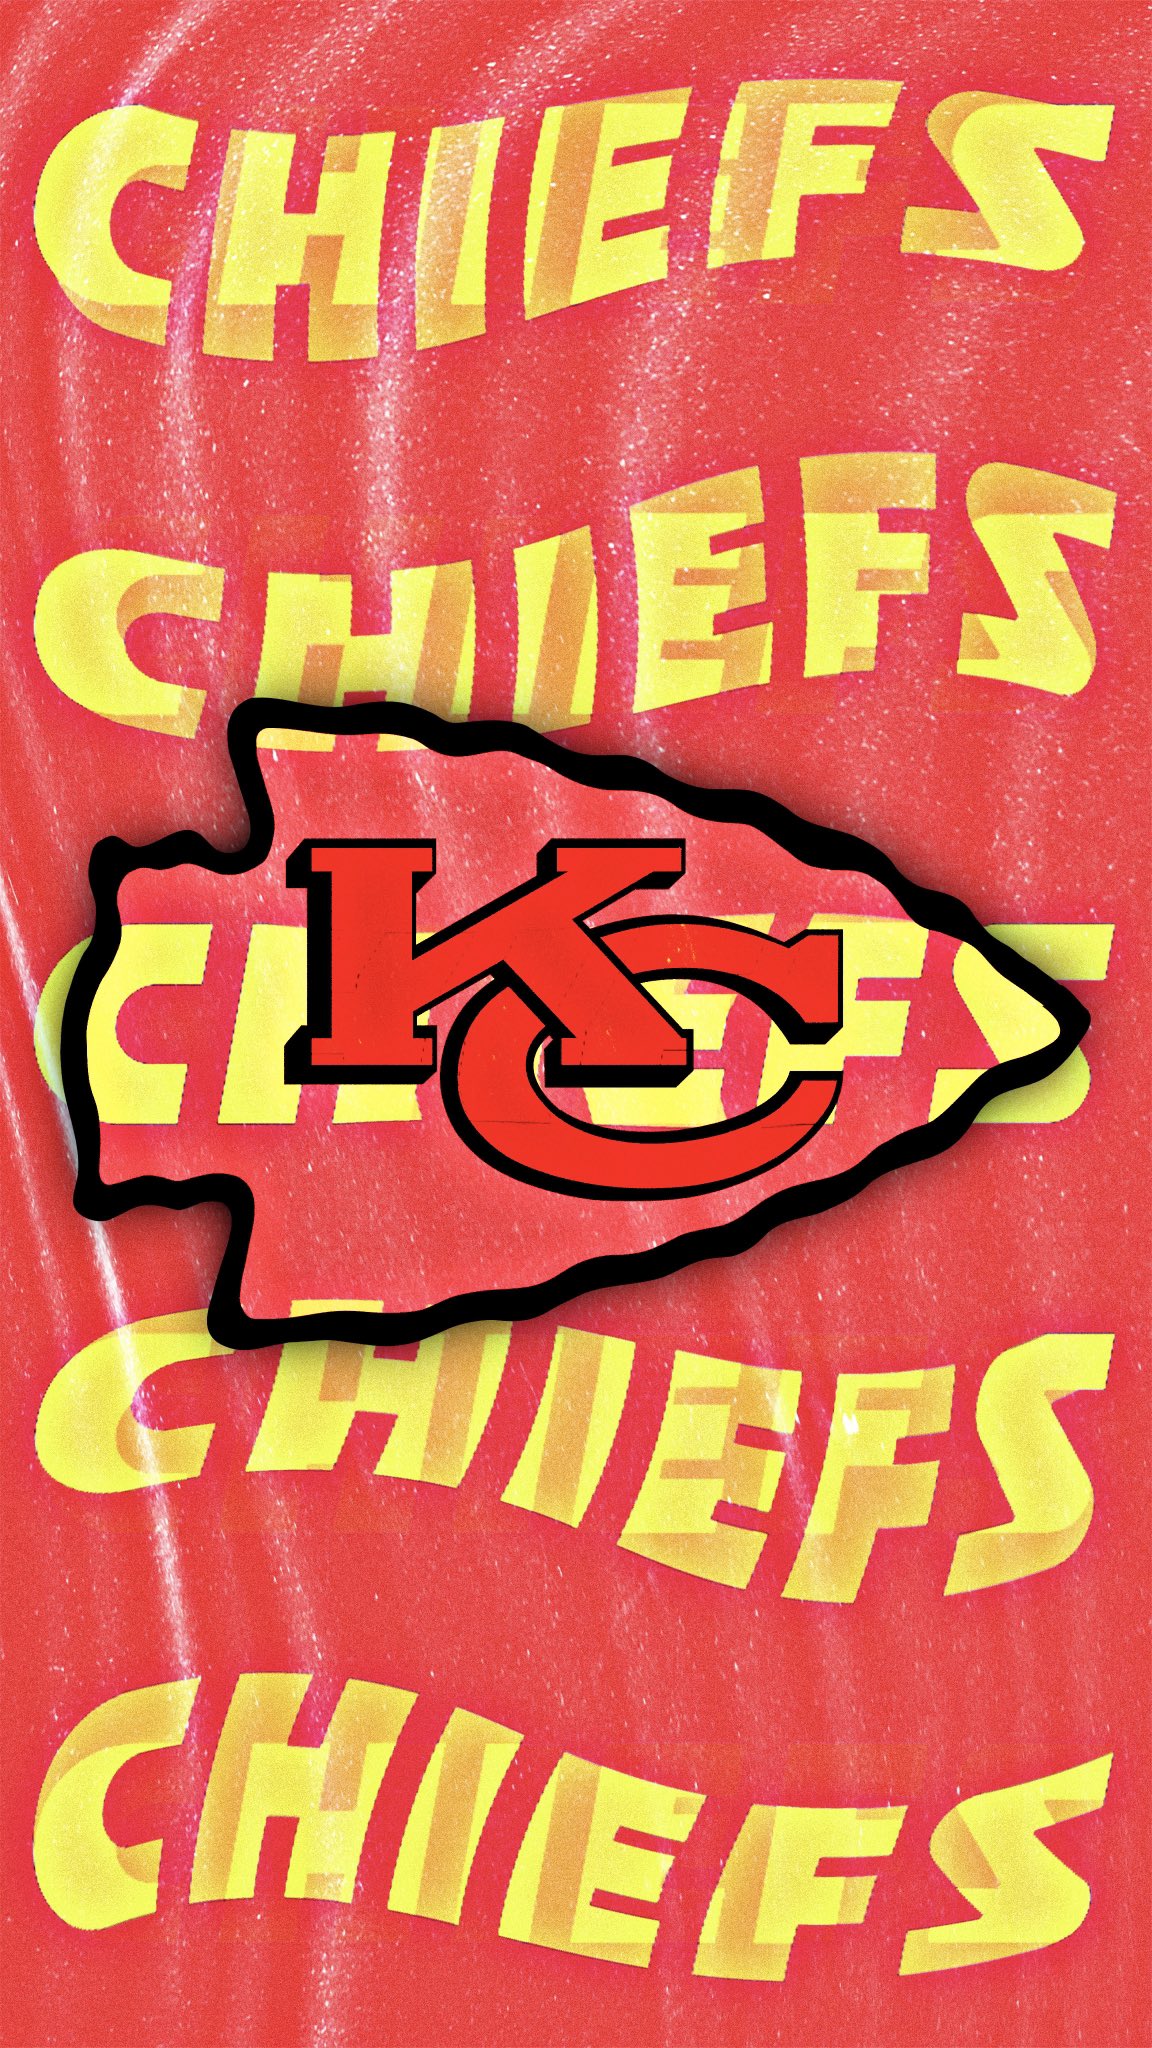 Kansas City Chiefs 2021 wallpaper